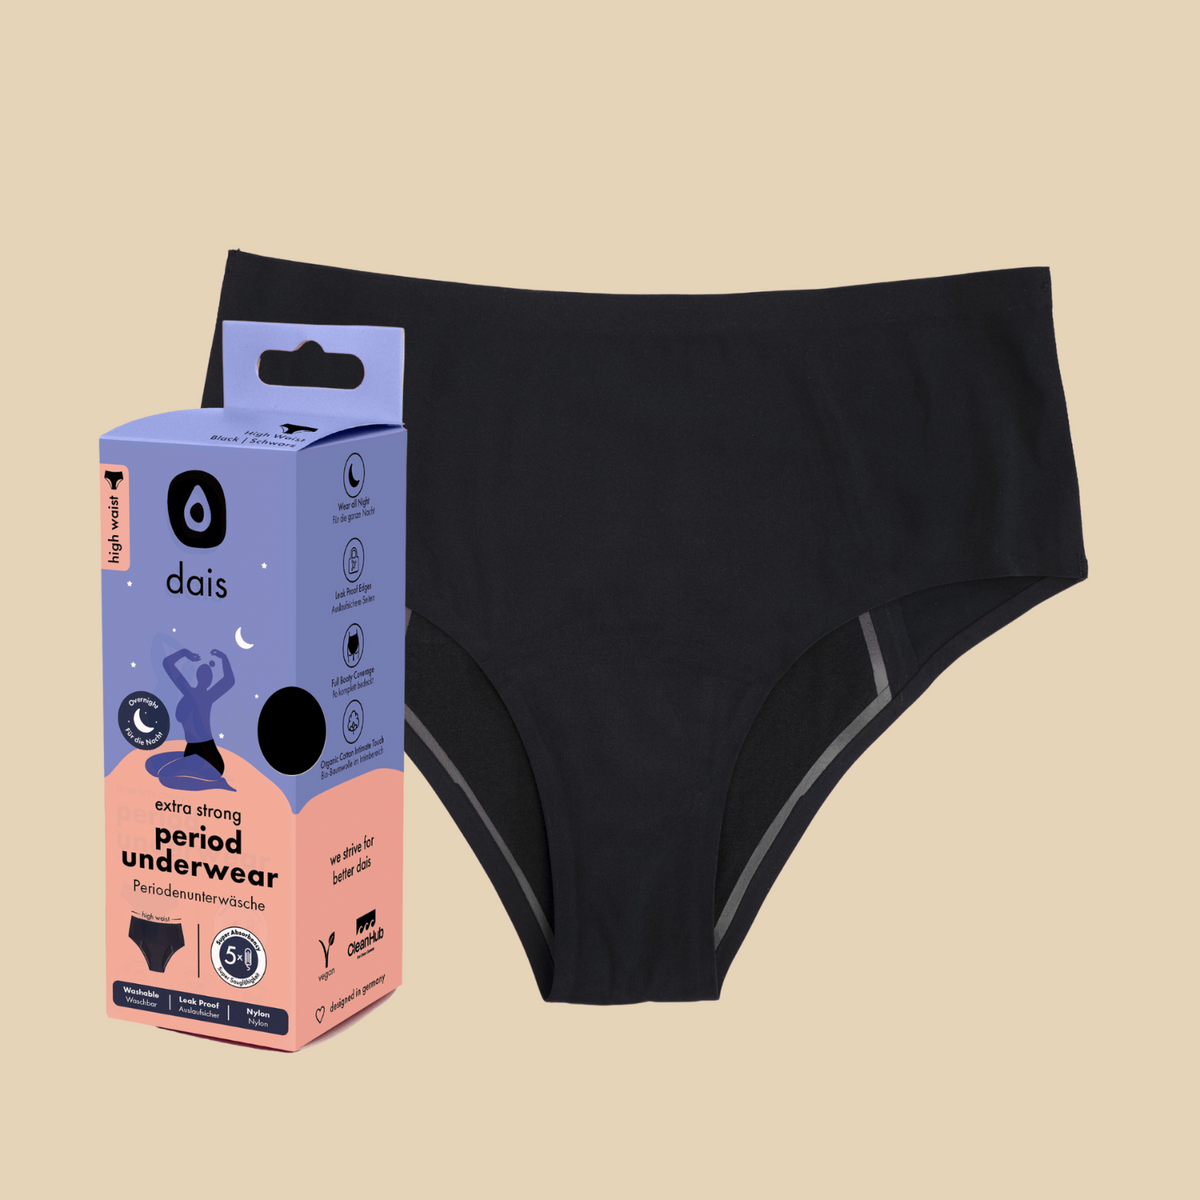 Period Underwear by always - oh feliz UK Online Shop